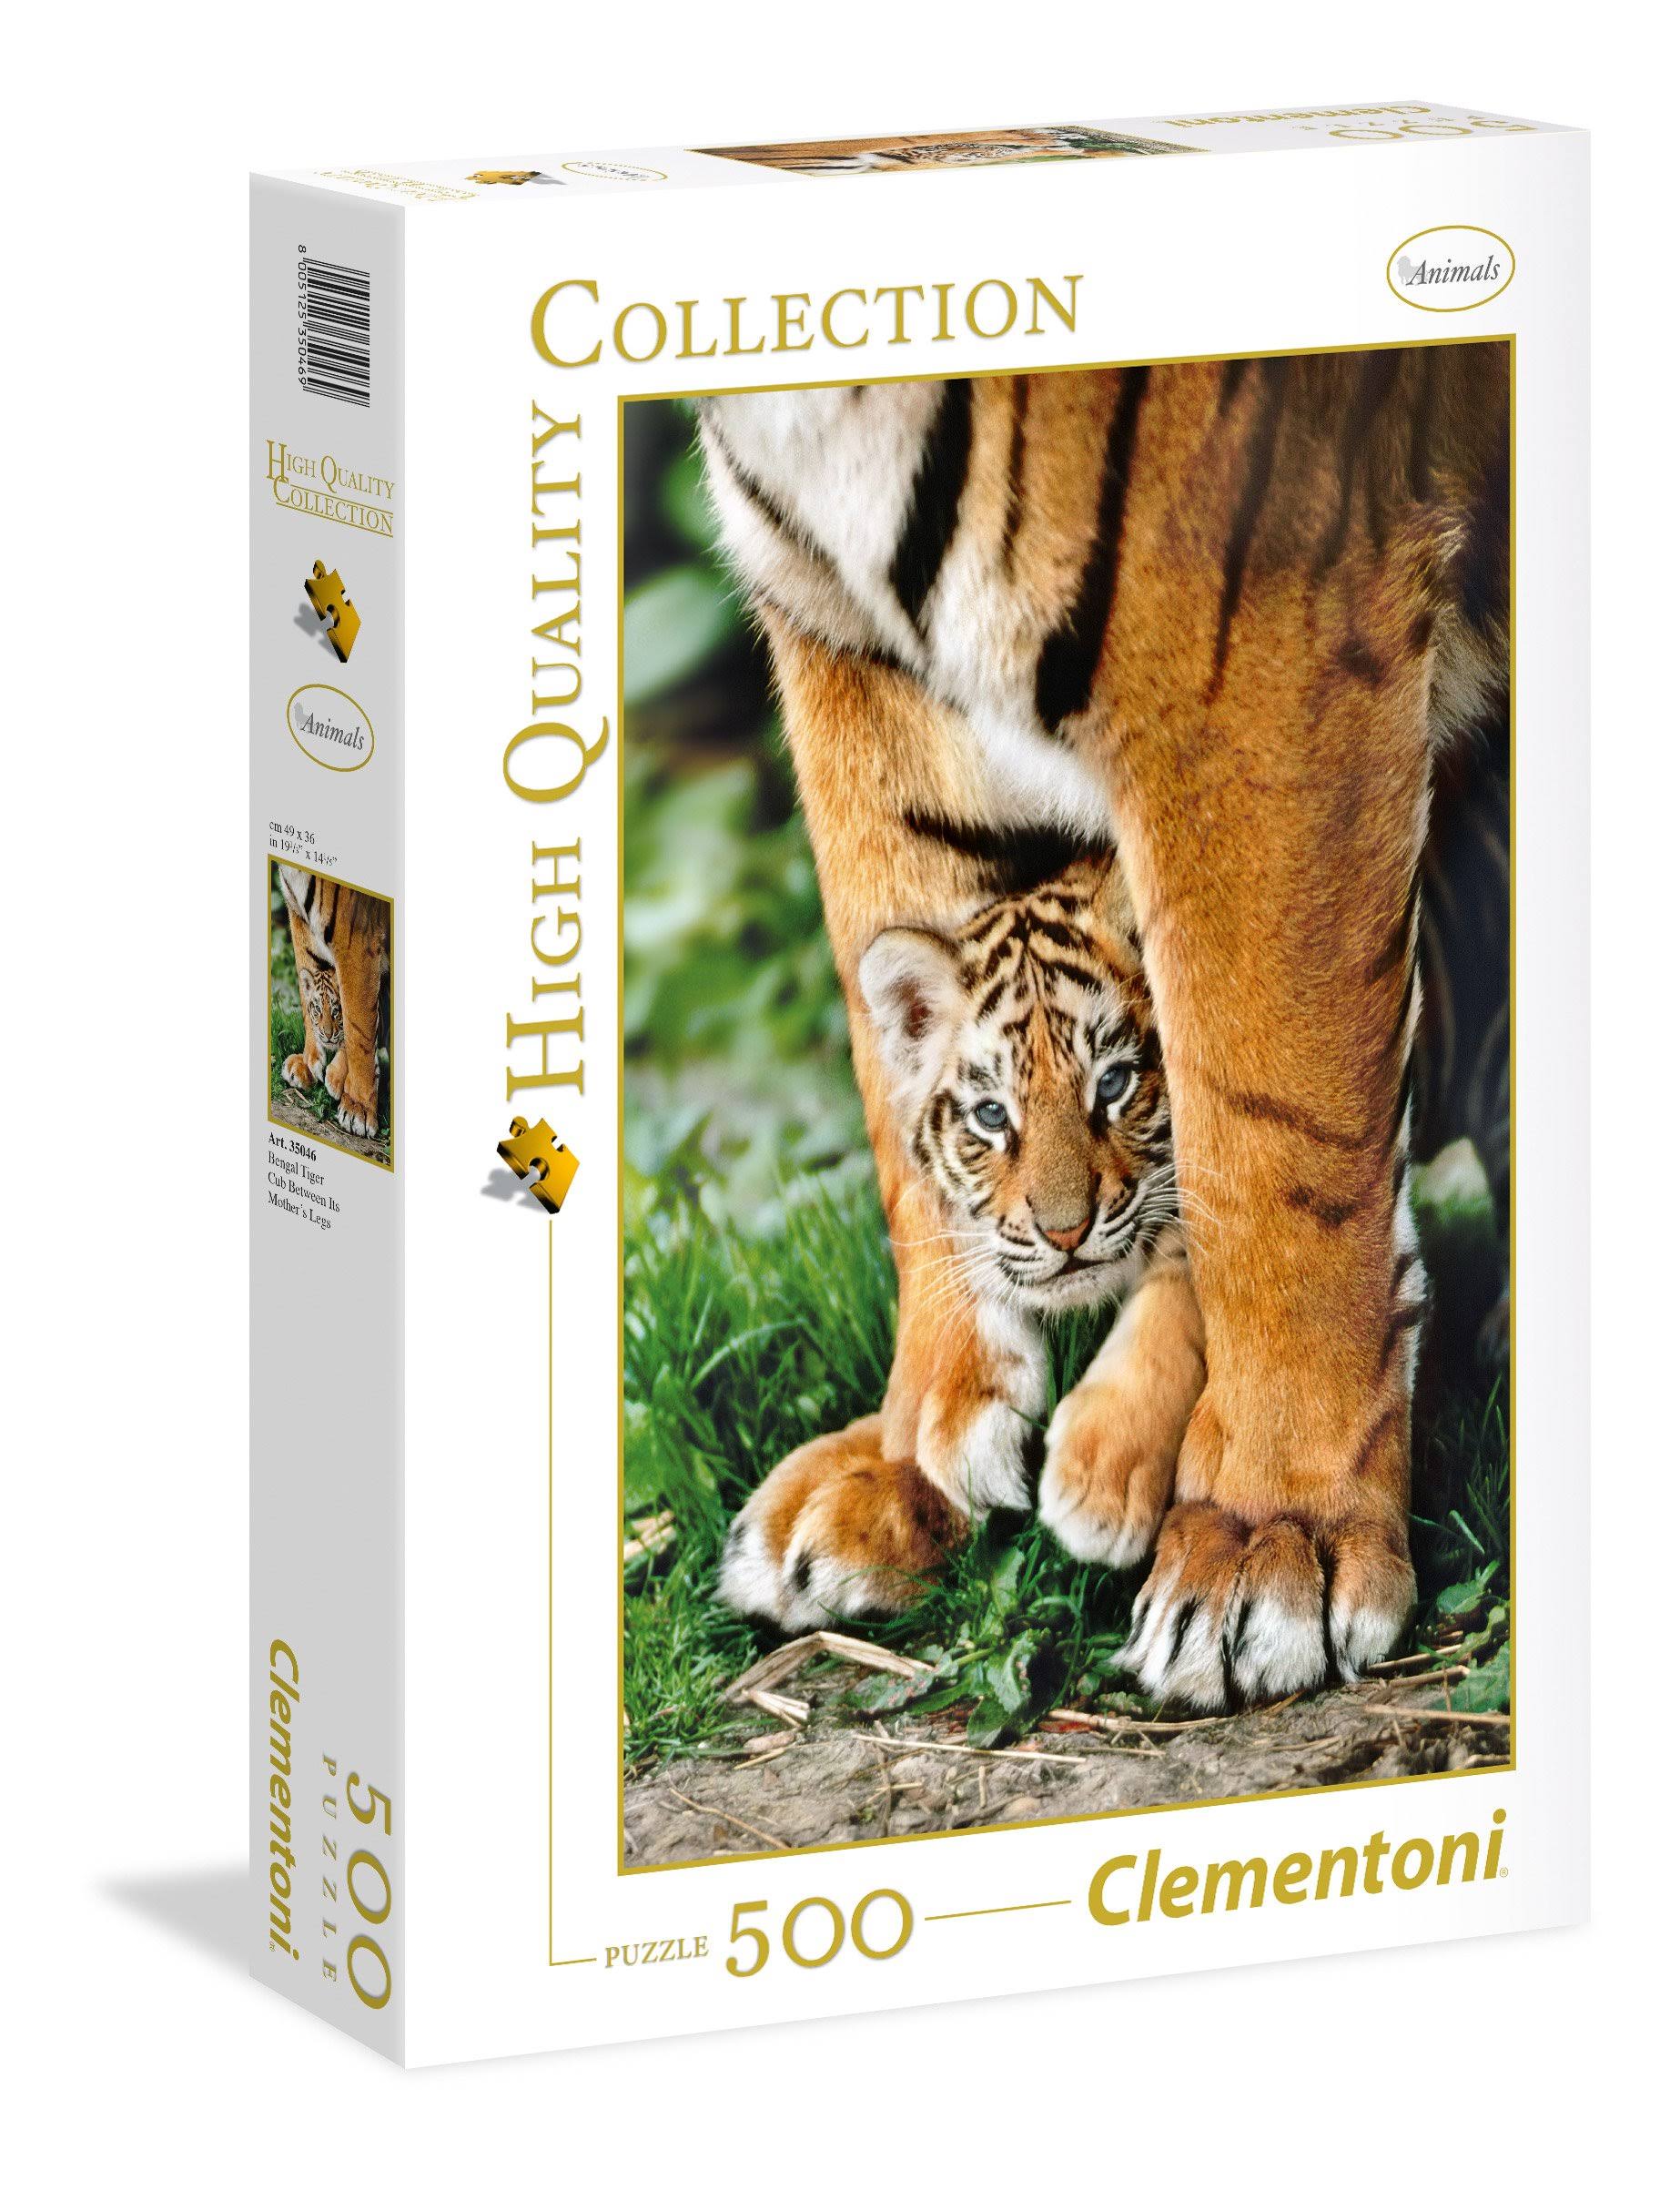 Clementoni Puzzle 500 Pcs Bengal Tiger